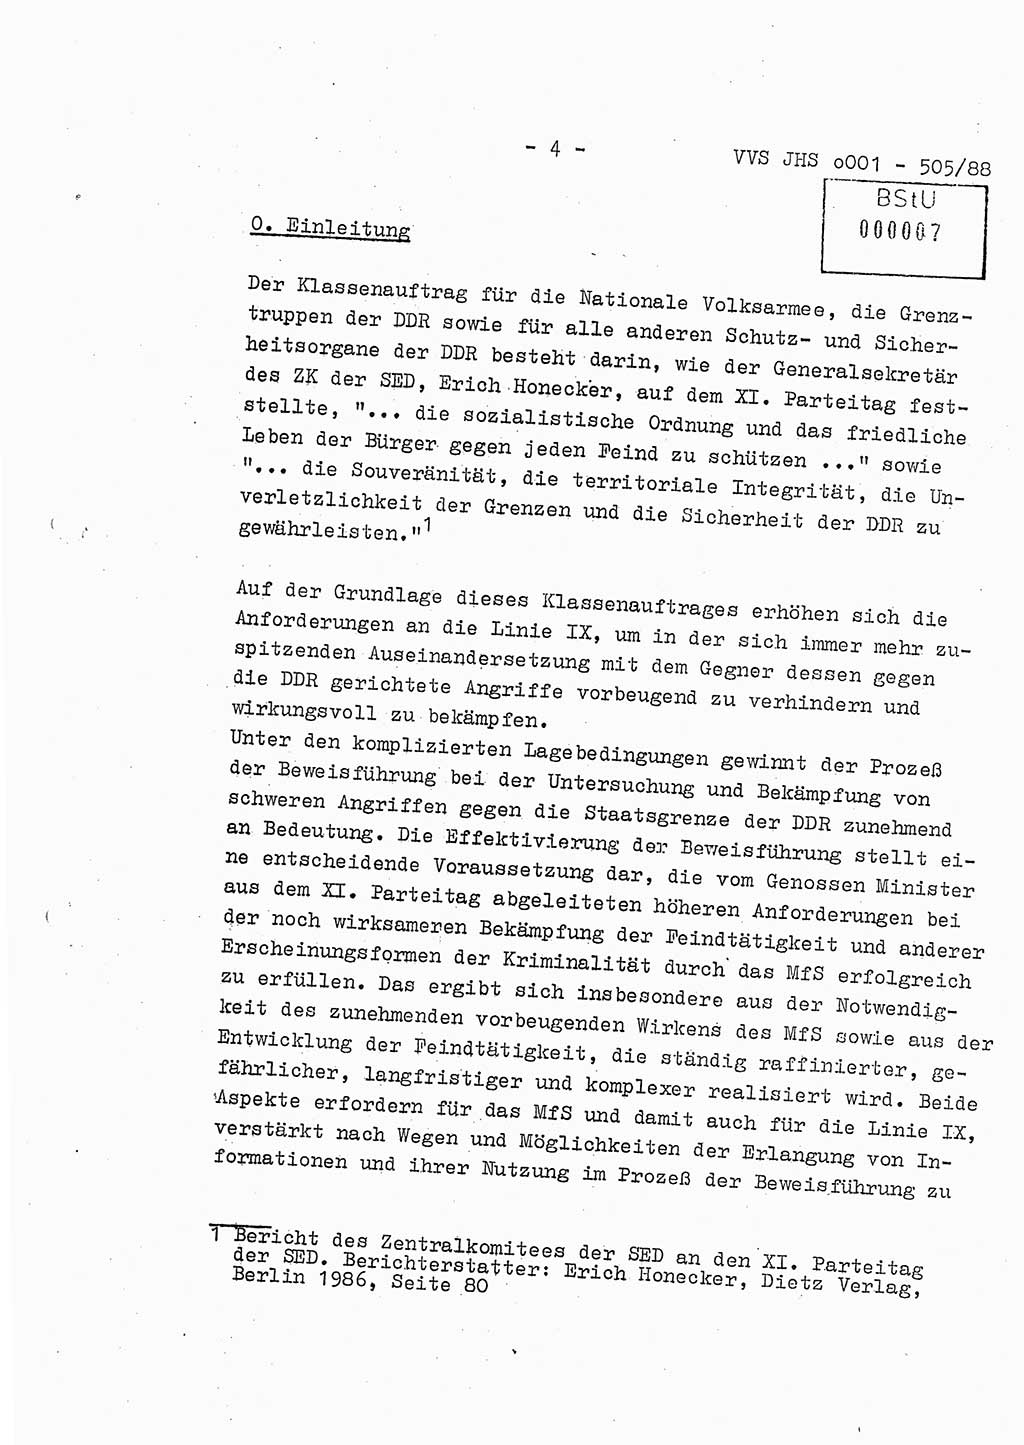 Diplomarbeit Leutnant Frank Schulze (HA Ⅸ/9), Ministerium für Staatssicherheit (MfS) [Deutsche Demokratische Republik (DDR)], Juristische Hochschule (JHS), Vertrauliche Verschlußsache (VVS) o001-505/88, Potsdam 1988, Seite 4 (Dipl.-Arb. MfS DDR JHS VVS o001-505/88 1988, S. 4)